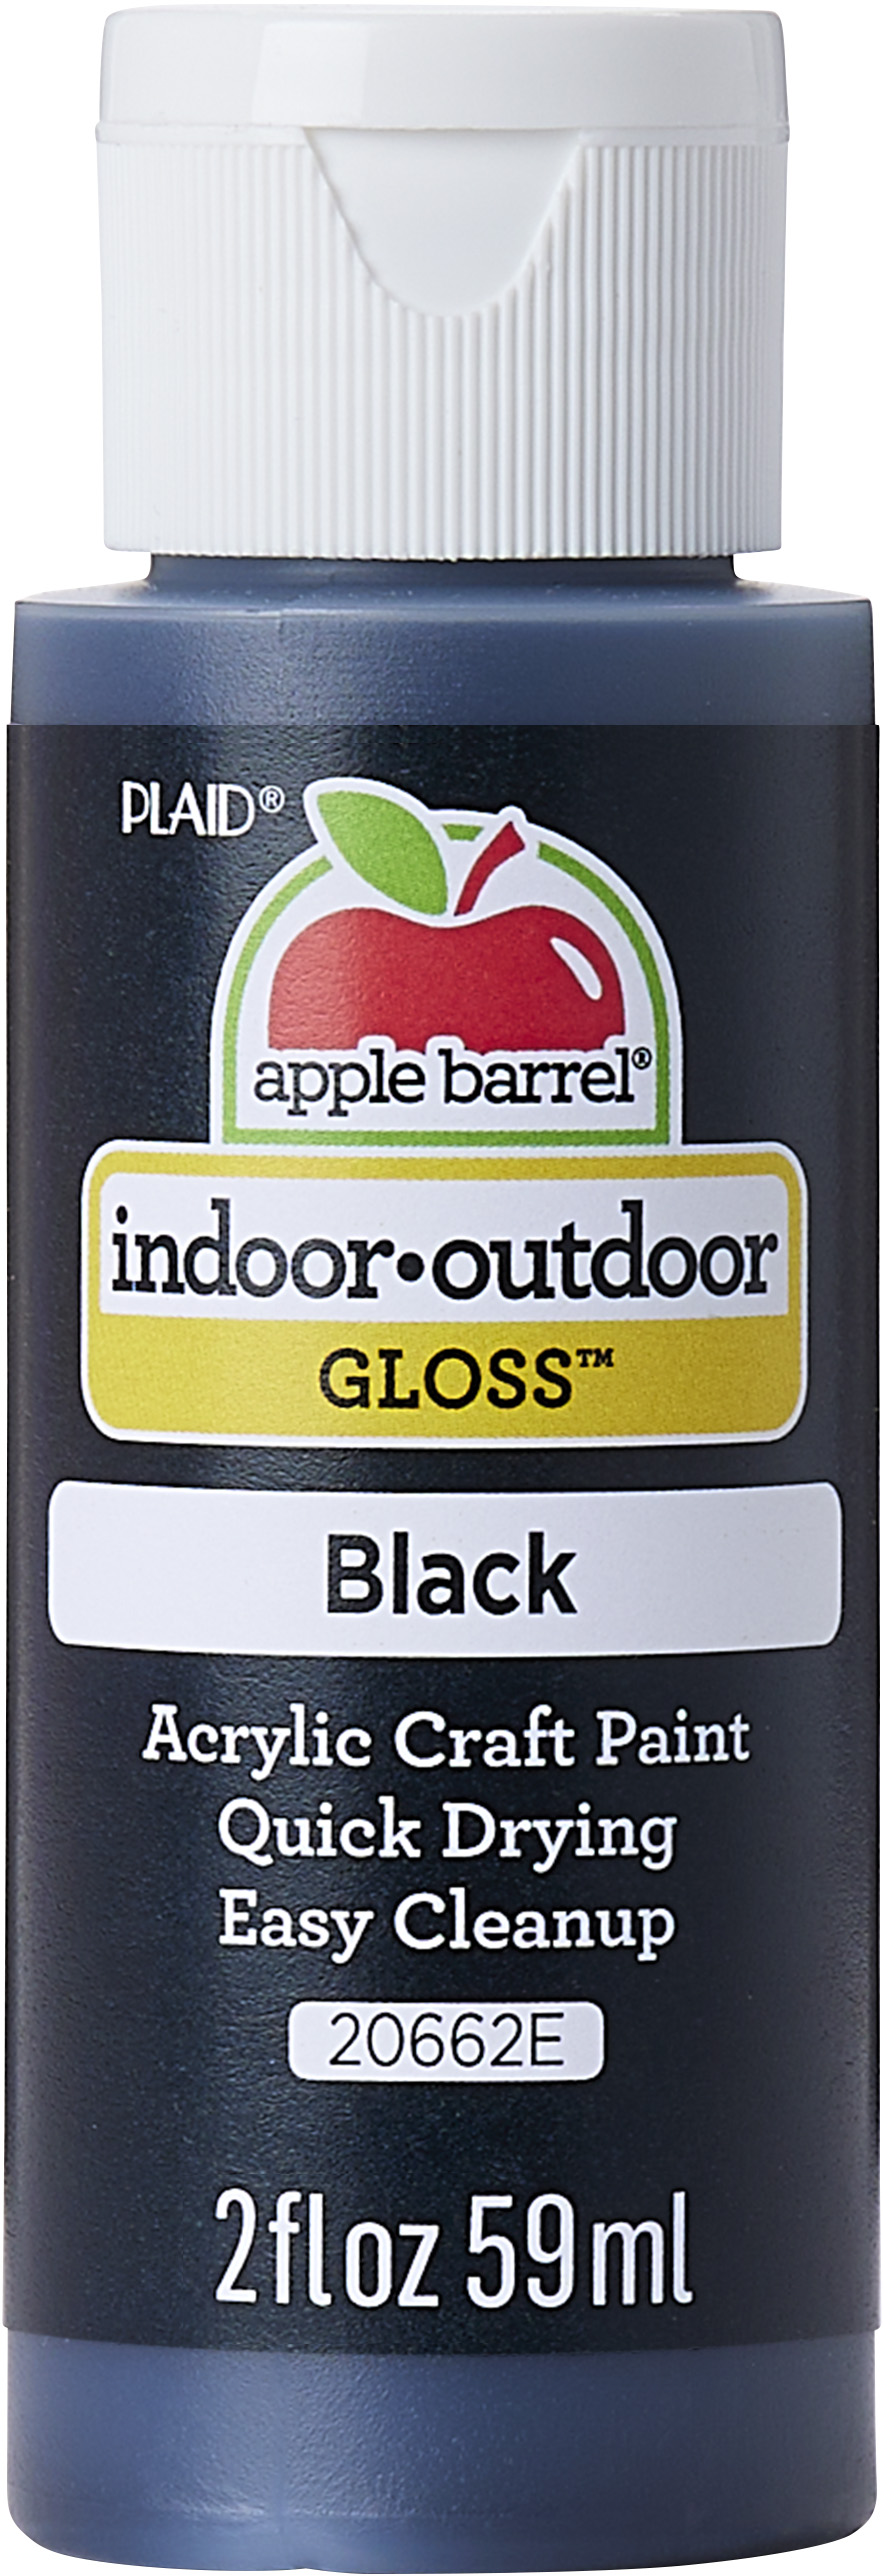 Apple Barrel Gloss, Black - 2 fl oz bottle